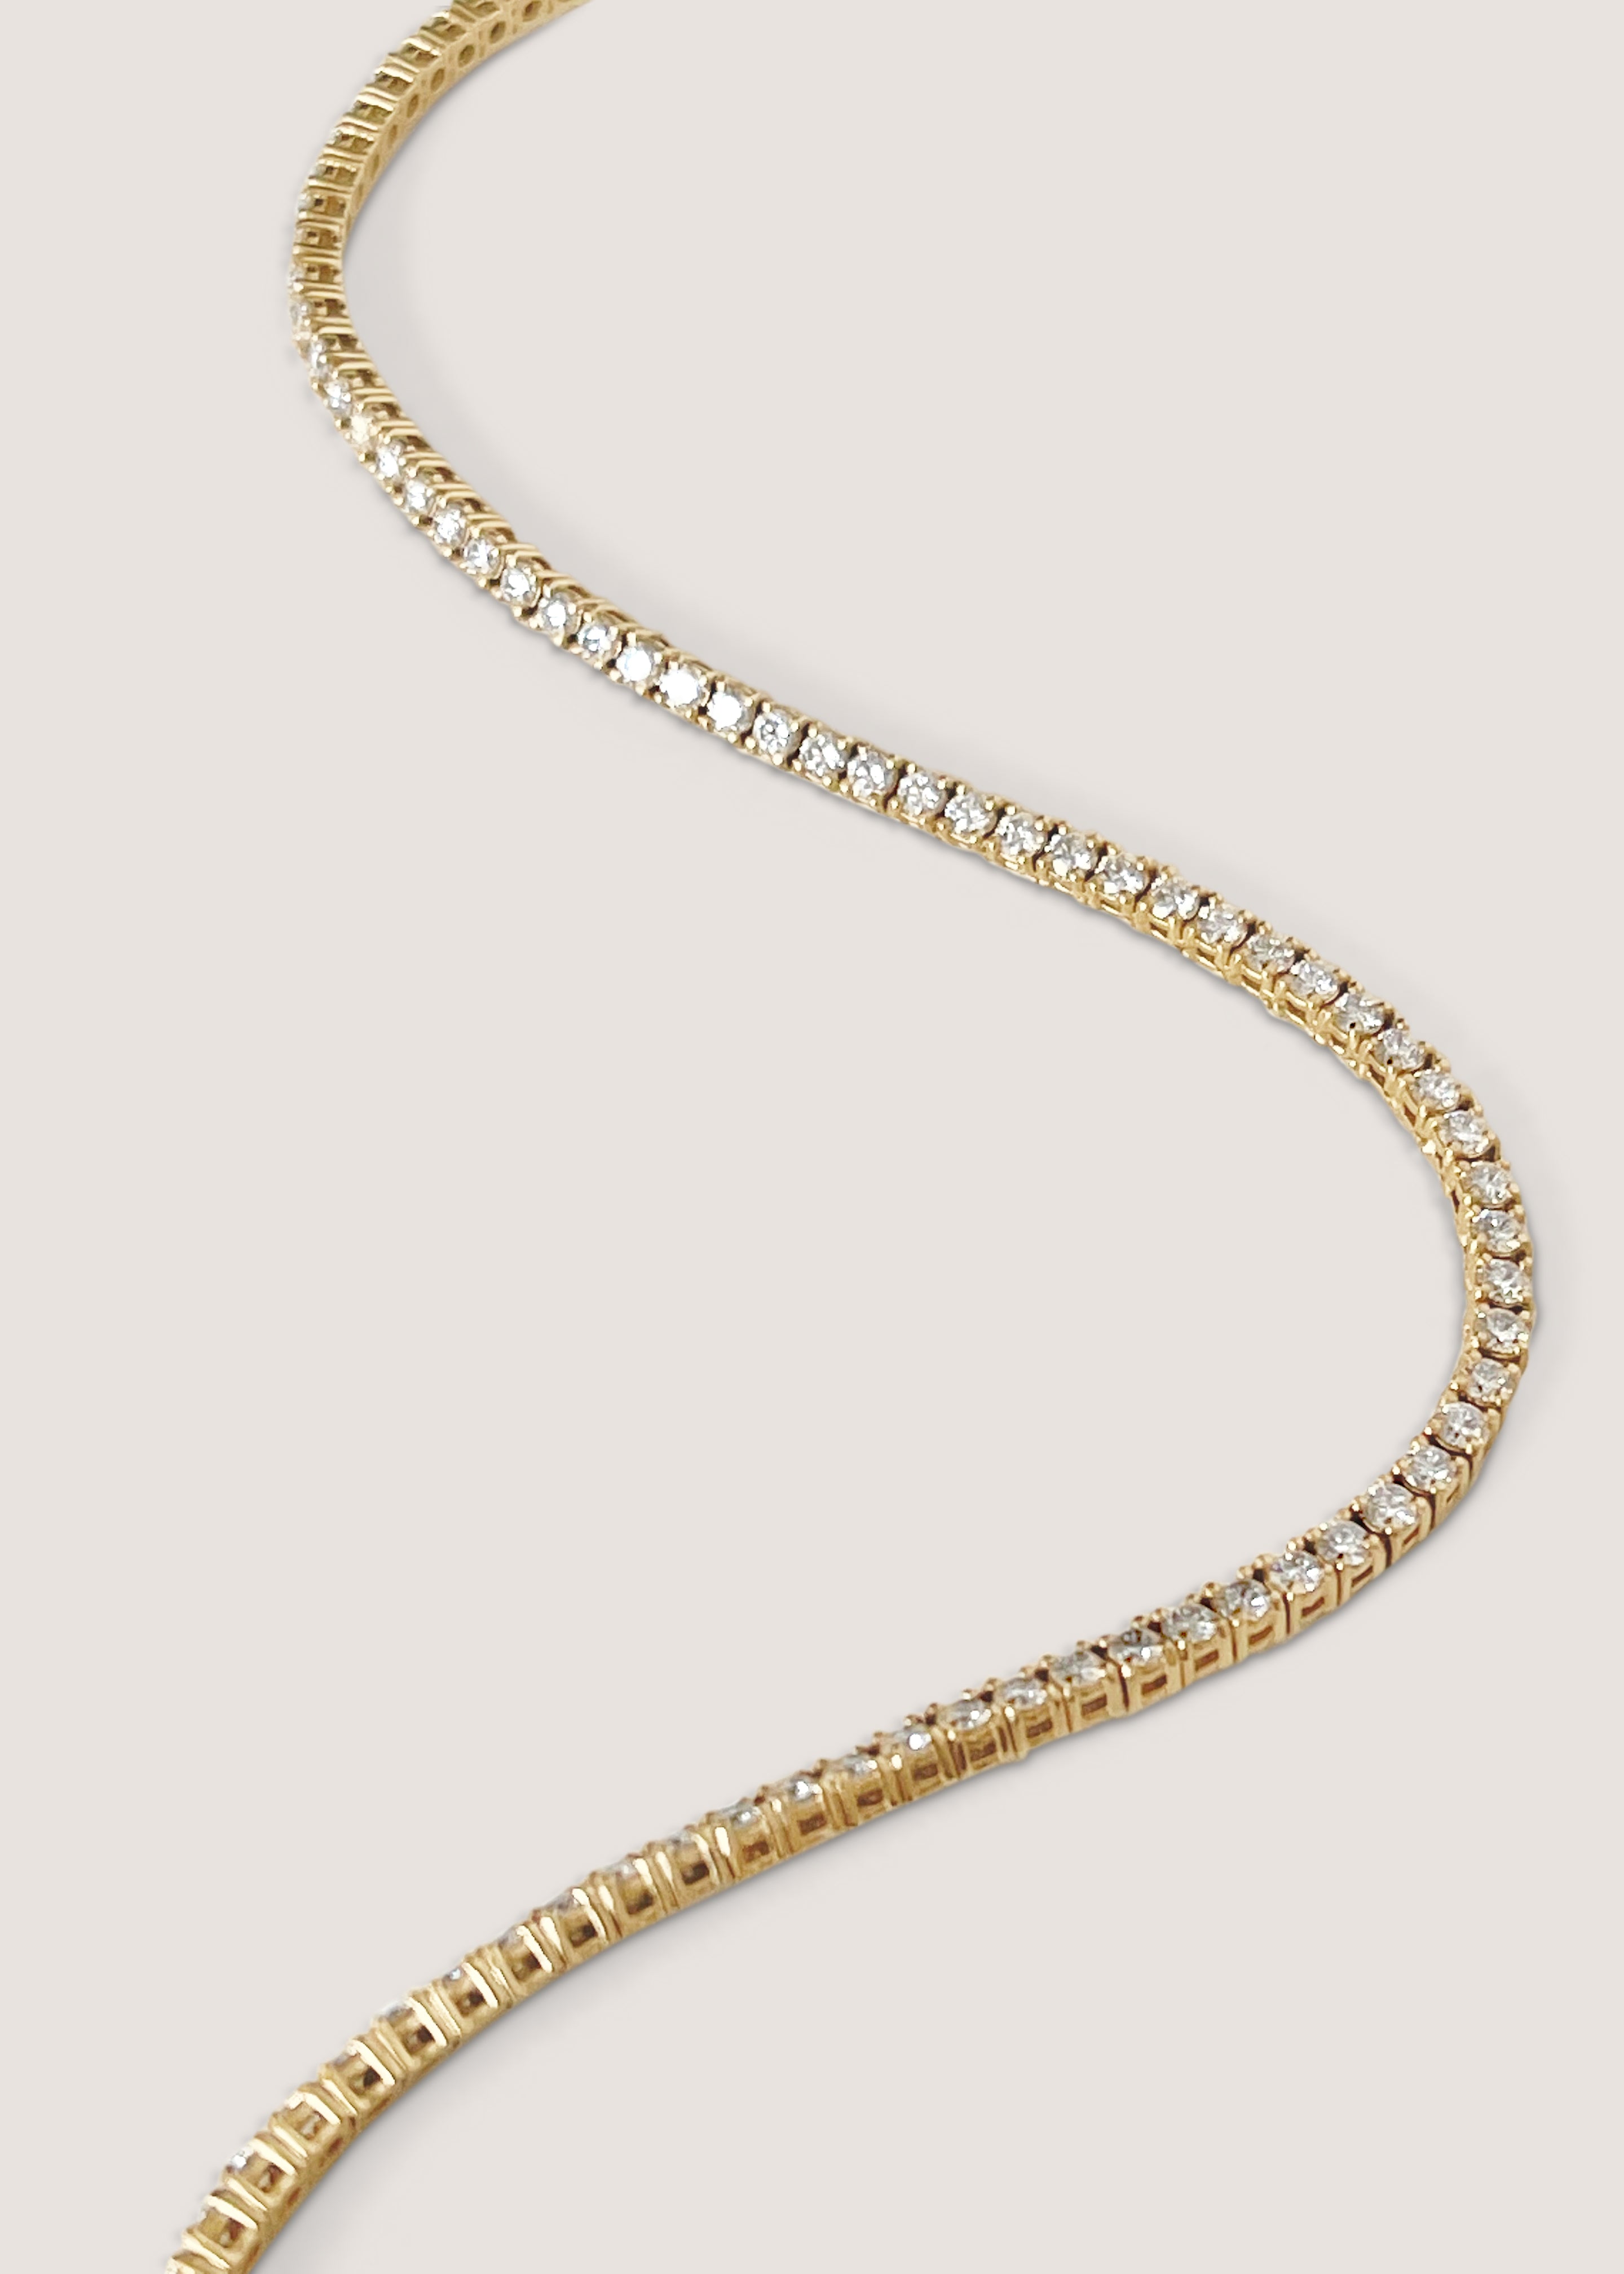 alt="Petite Diana Diamond Tennis Necklace close up"